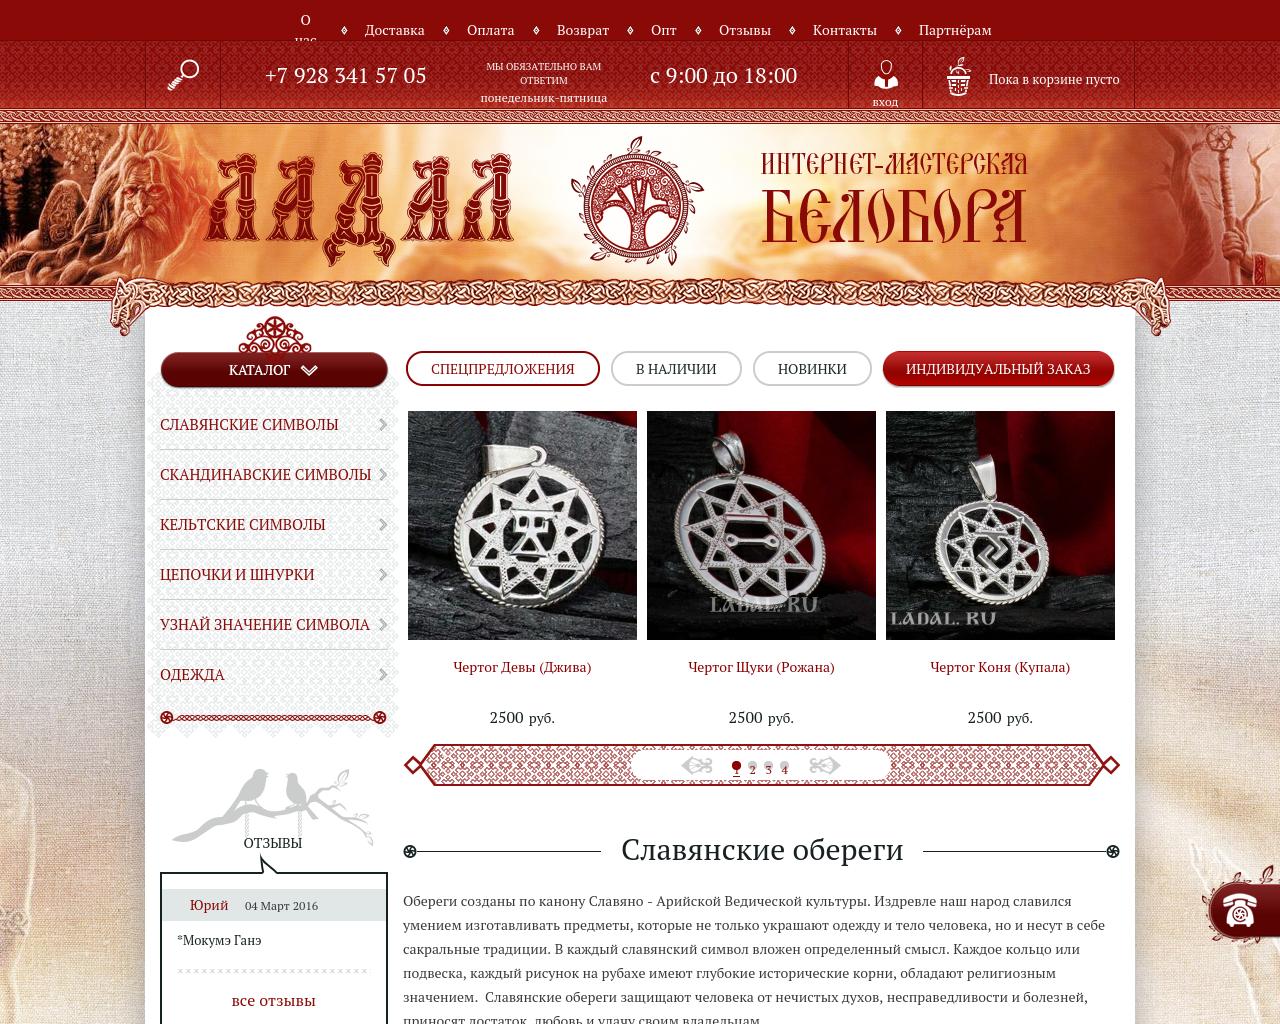 Изображение сайта ladal.ru в разрешении 1280x1024